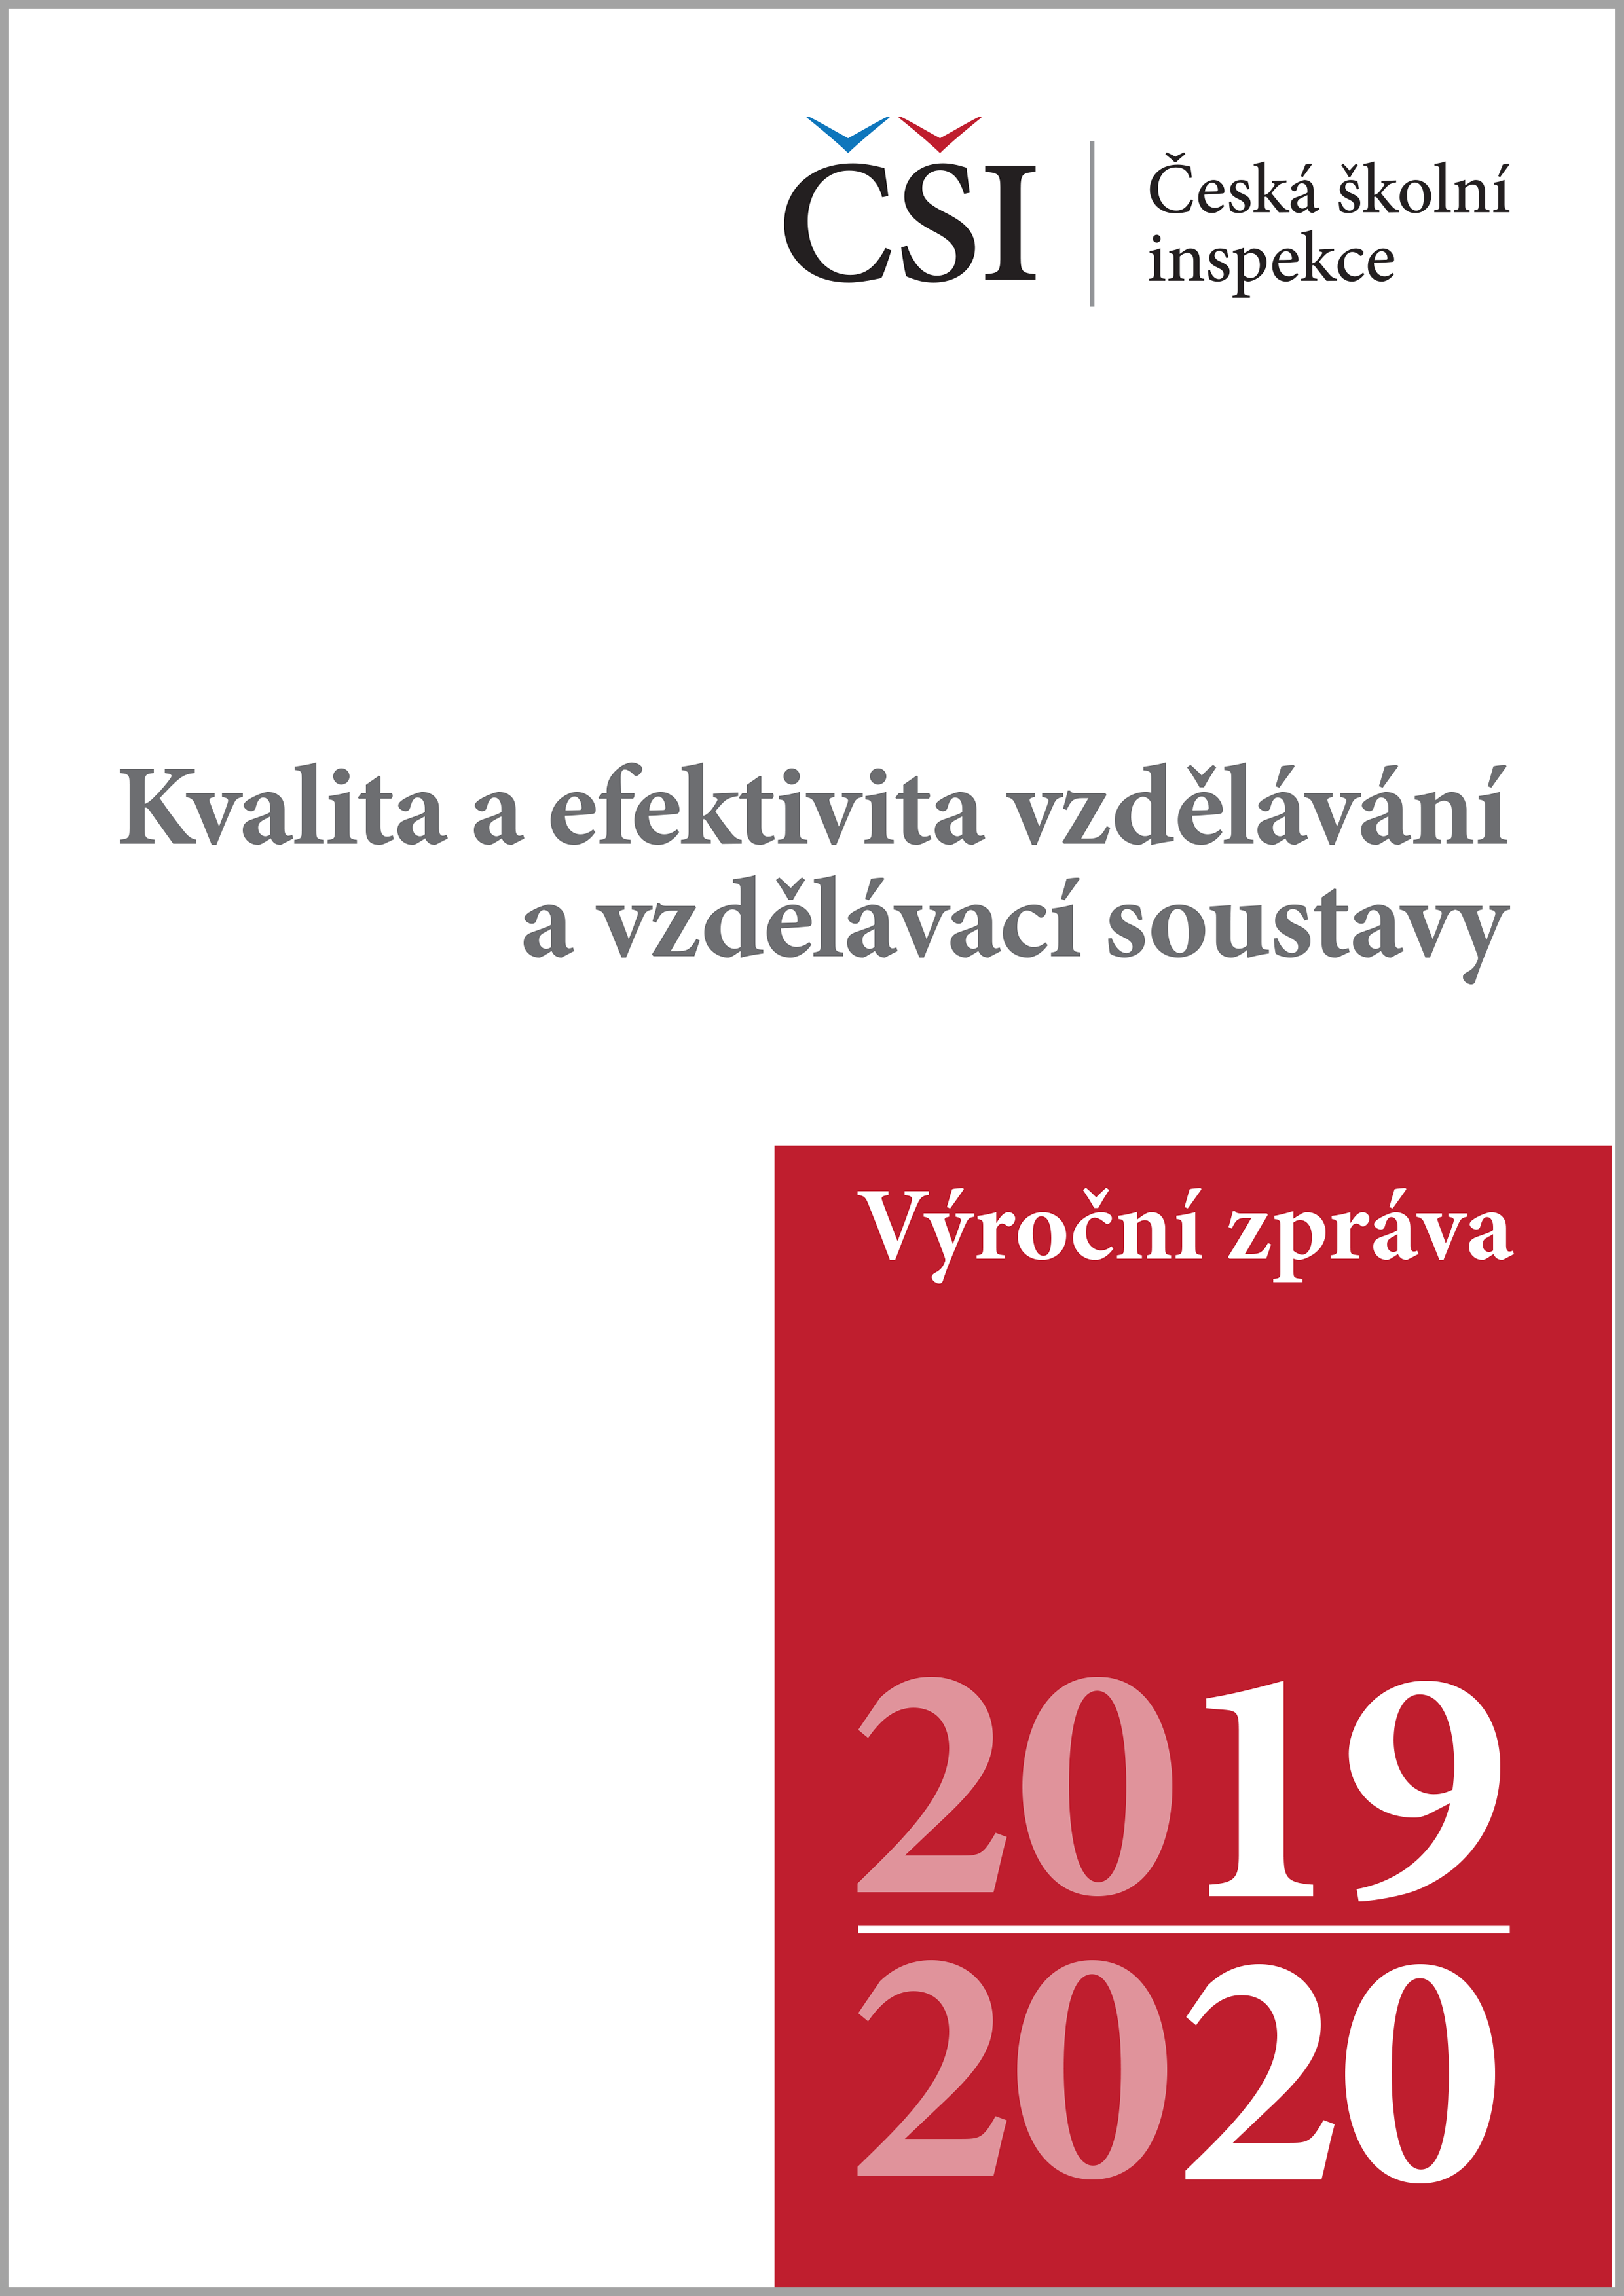 Kvalita a efektivita vzdělávání a vzdělávací soustavy ve školním roce 2019/2020 - výroční zpráva ČŠI